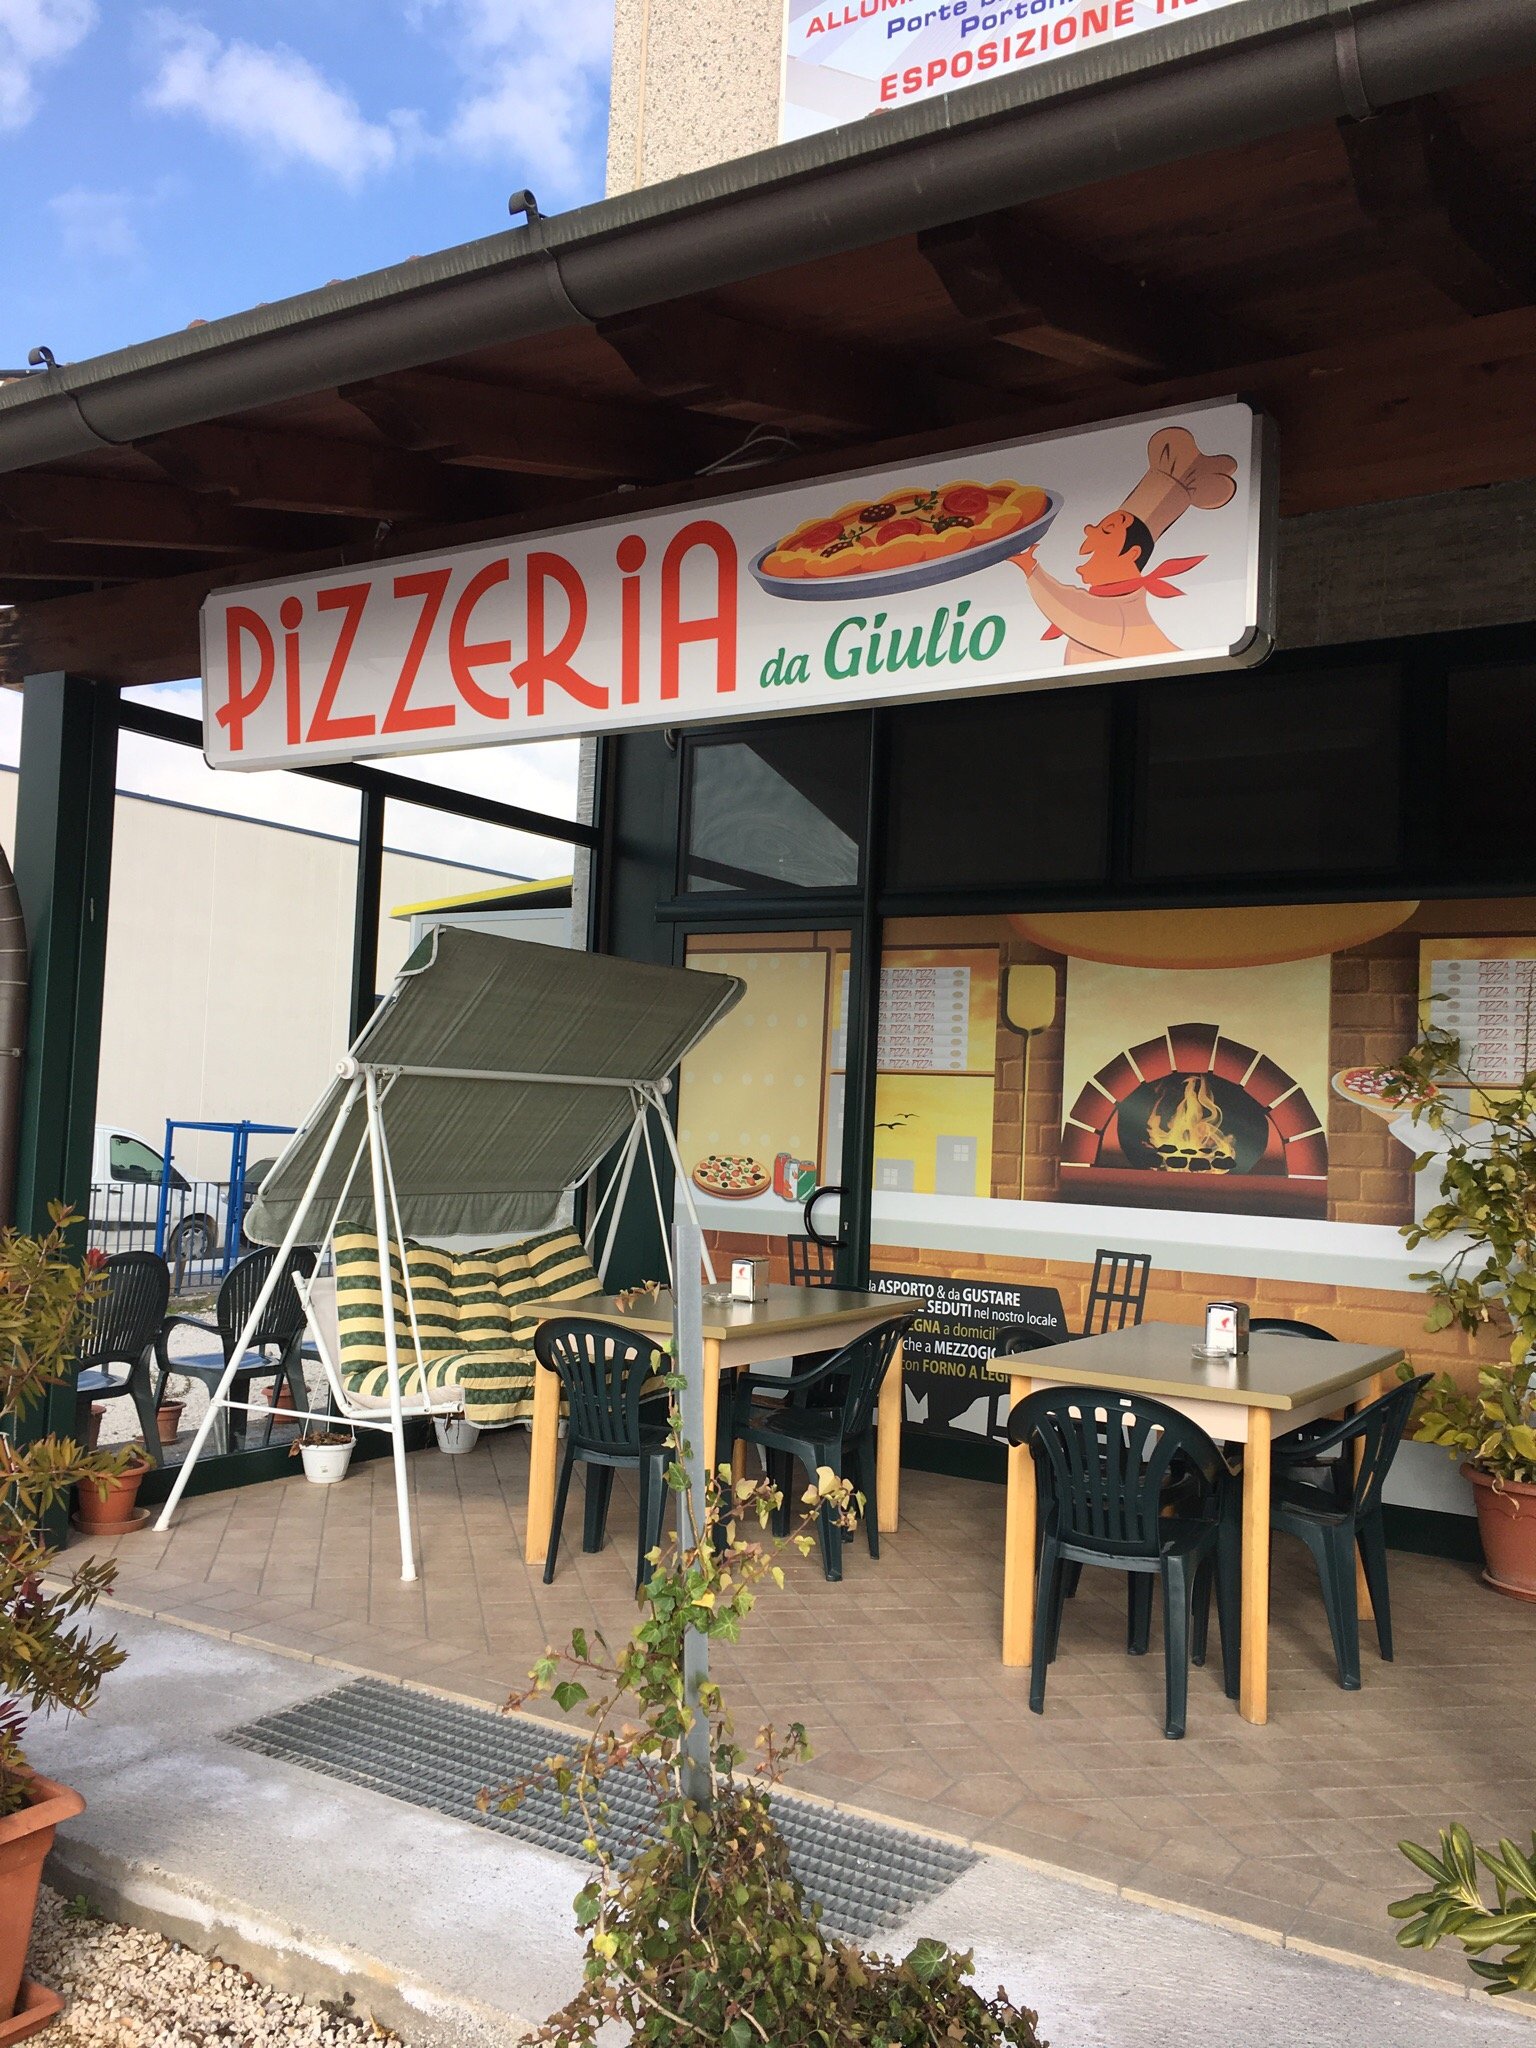 Pizzeria Da Giulio, Bedizzole